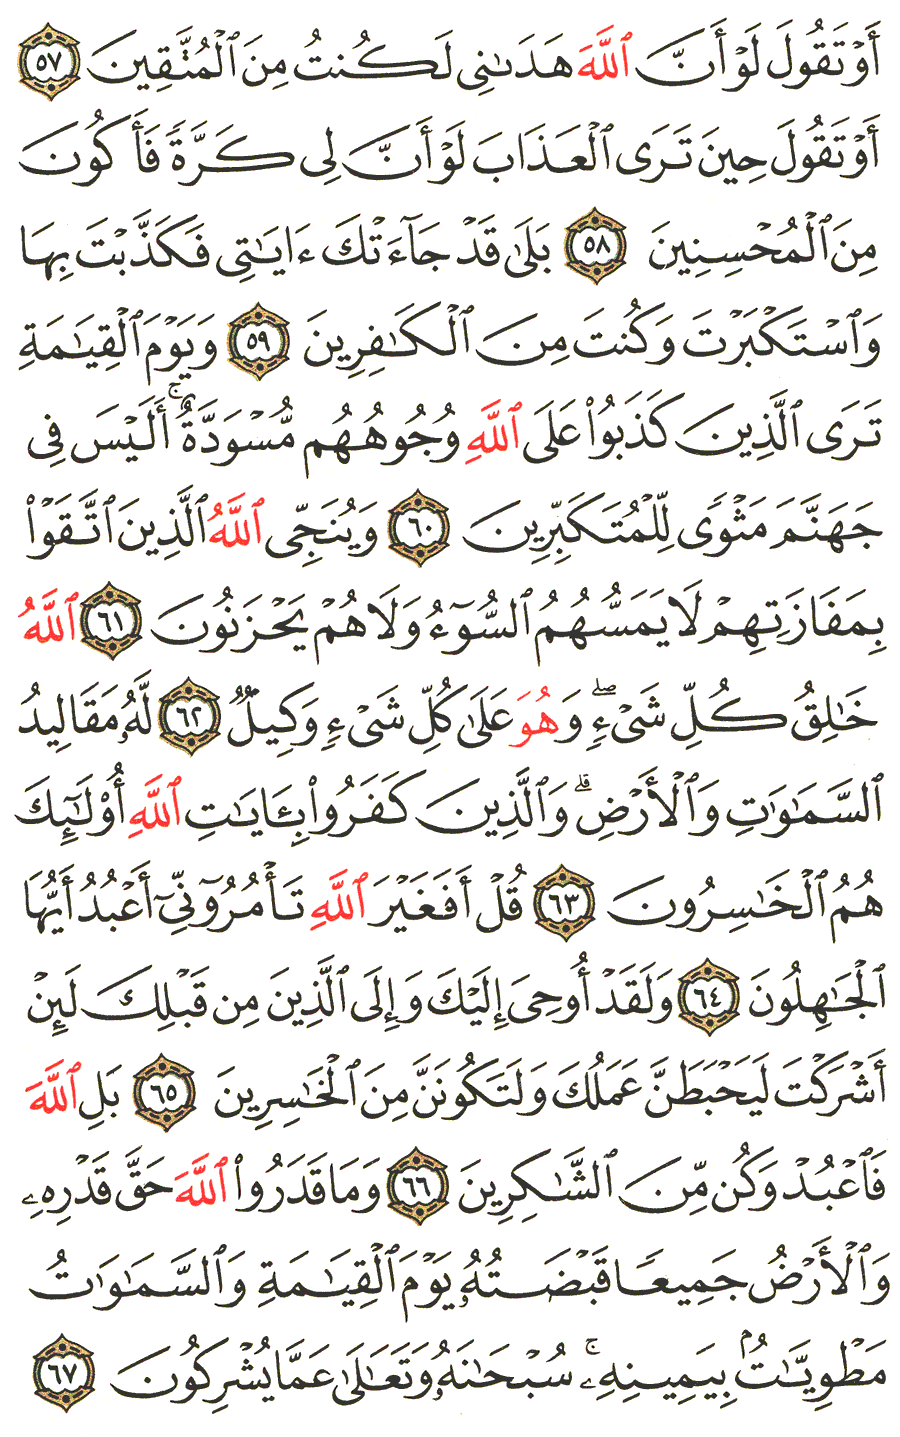 الصفحة 465 من القرآن الكريم